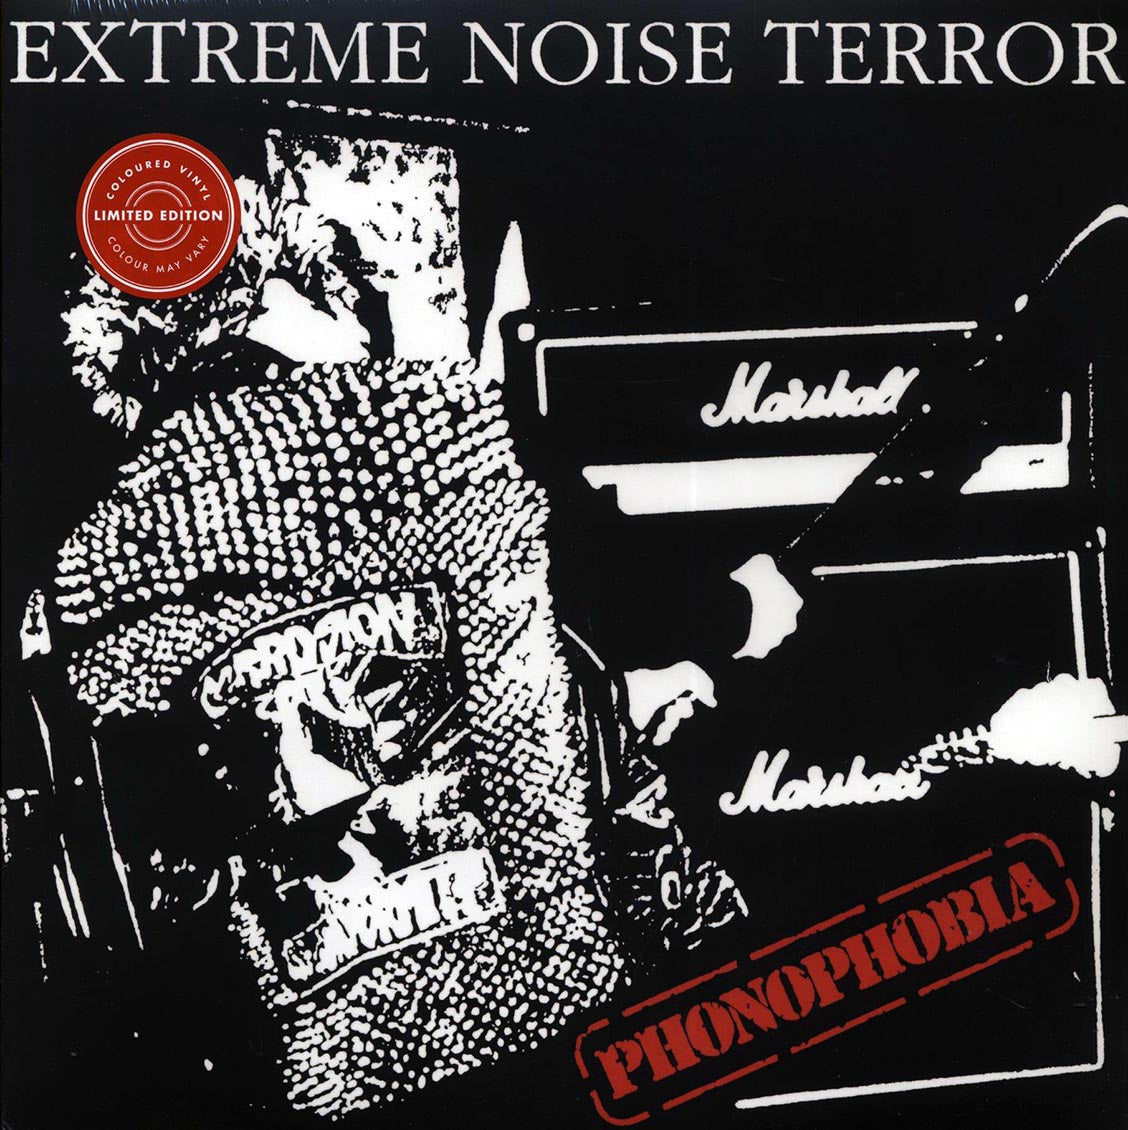 Extreme Noise Terror - Phonophobia (ltd. ed.) (2xLP) (red vinyl) - Vinyl LP